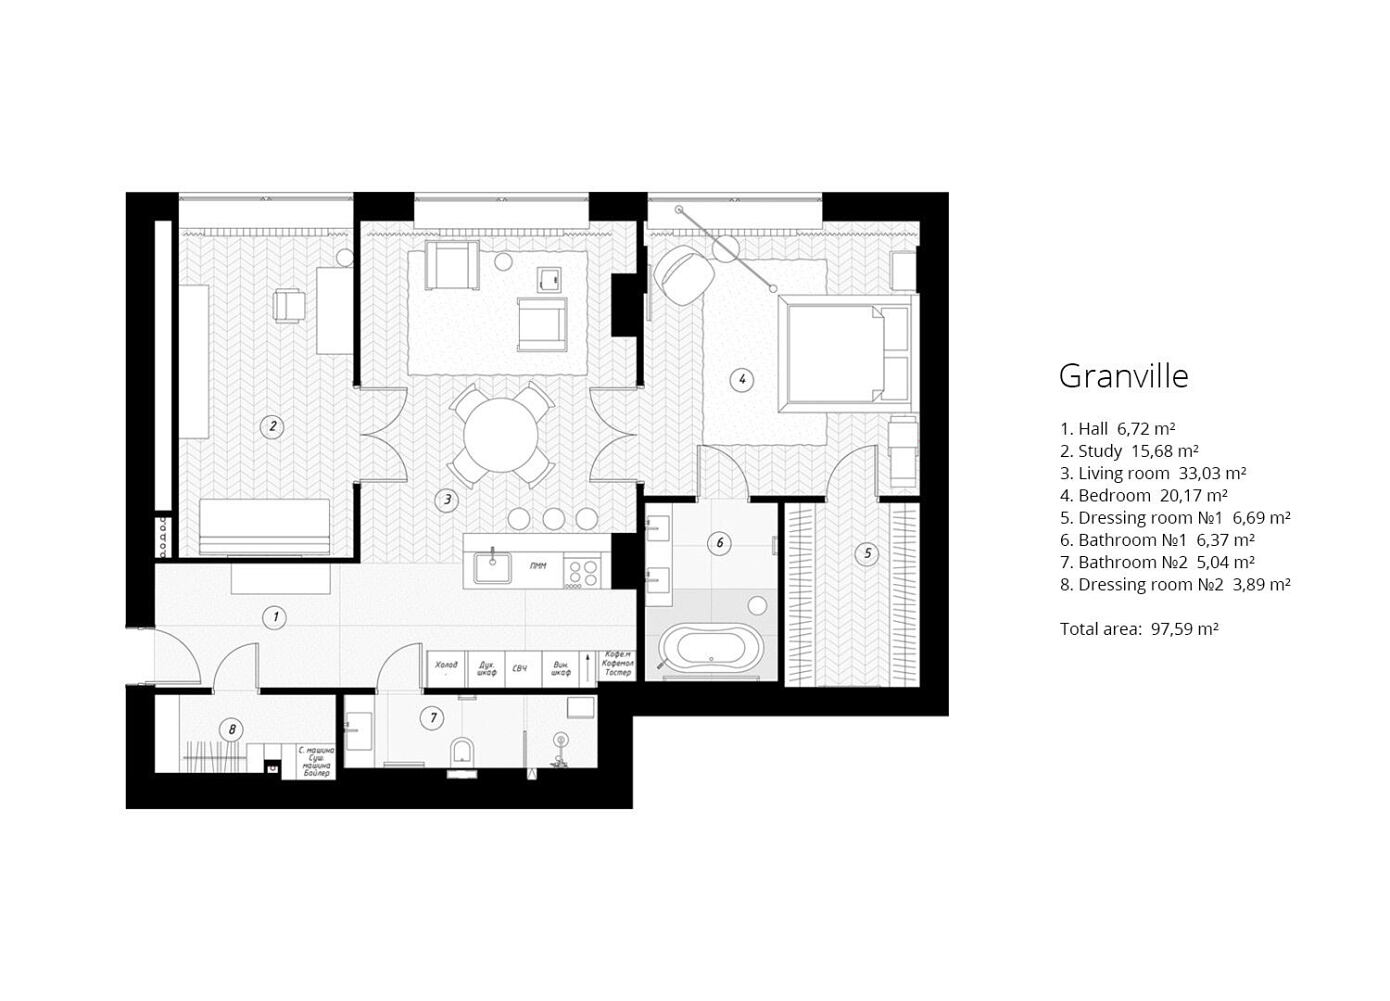 Granville Apartment by Cartelle Design